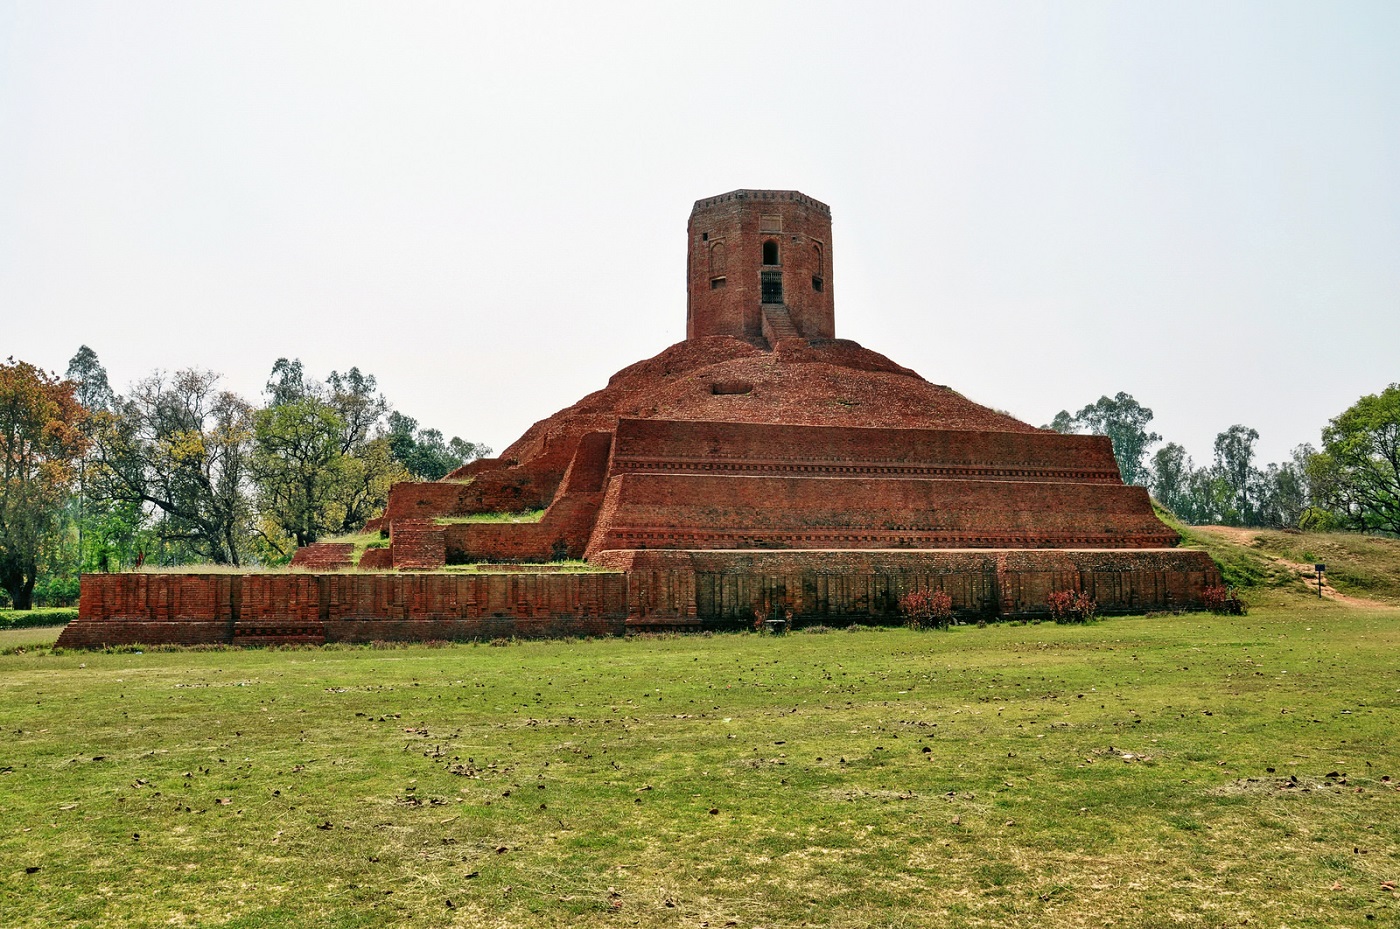 Chaukhandi Stupa, Sarnath